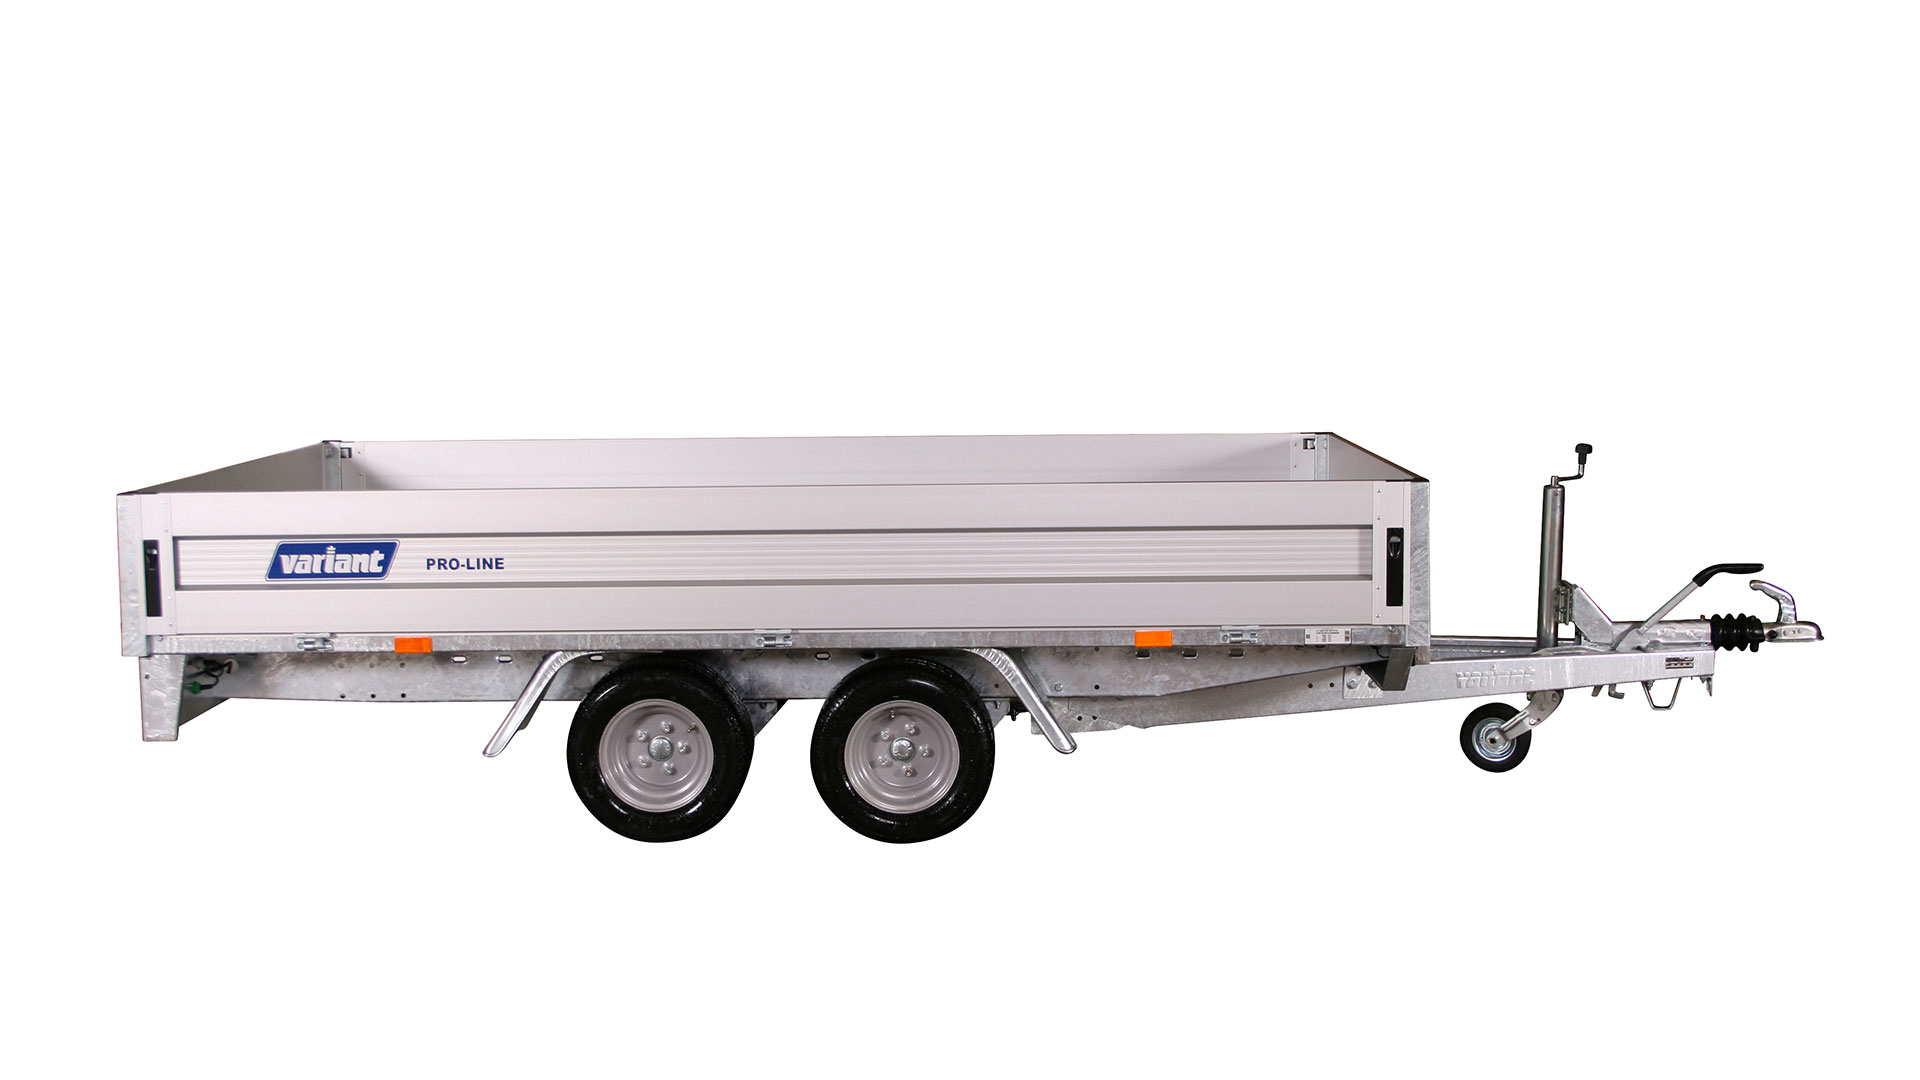 Variant PKW Anhänger Hochlader 3018 P3, 3000 kg, Ladefläche3,15 x 1,75 m (10 Zoll) - Konfiguration